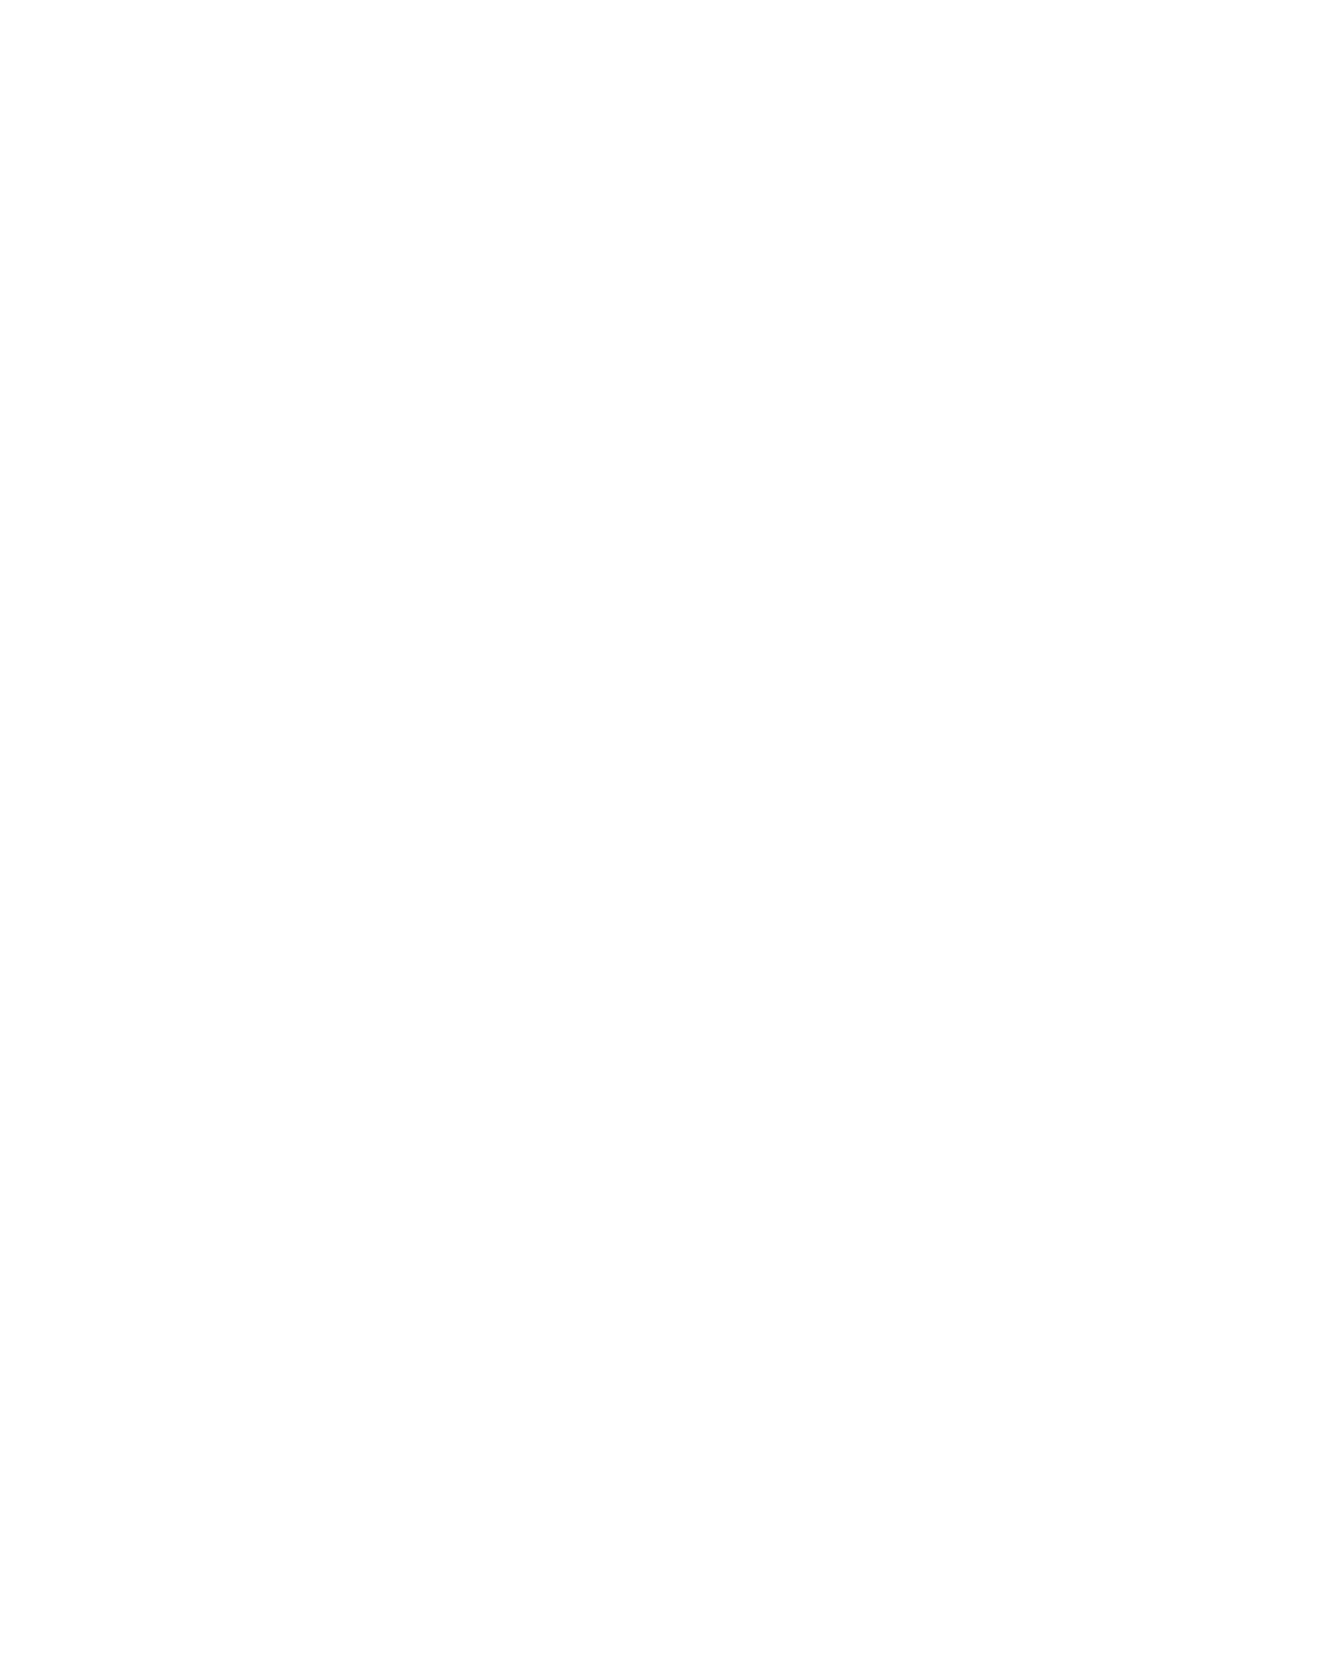 ‘CATS STATS